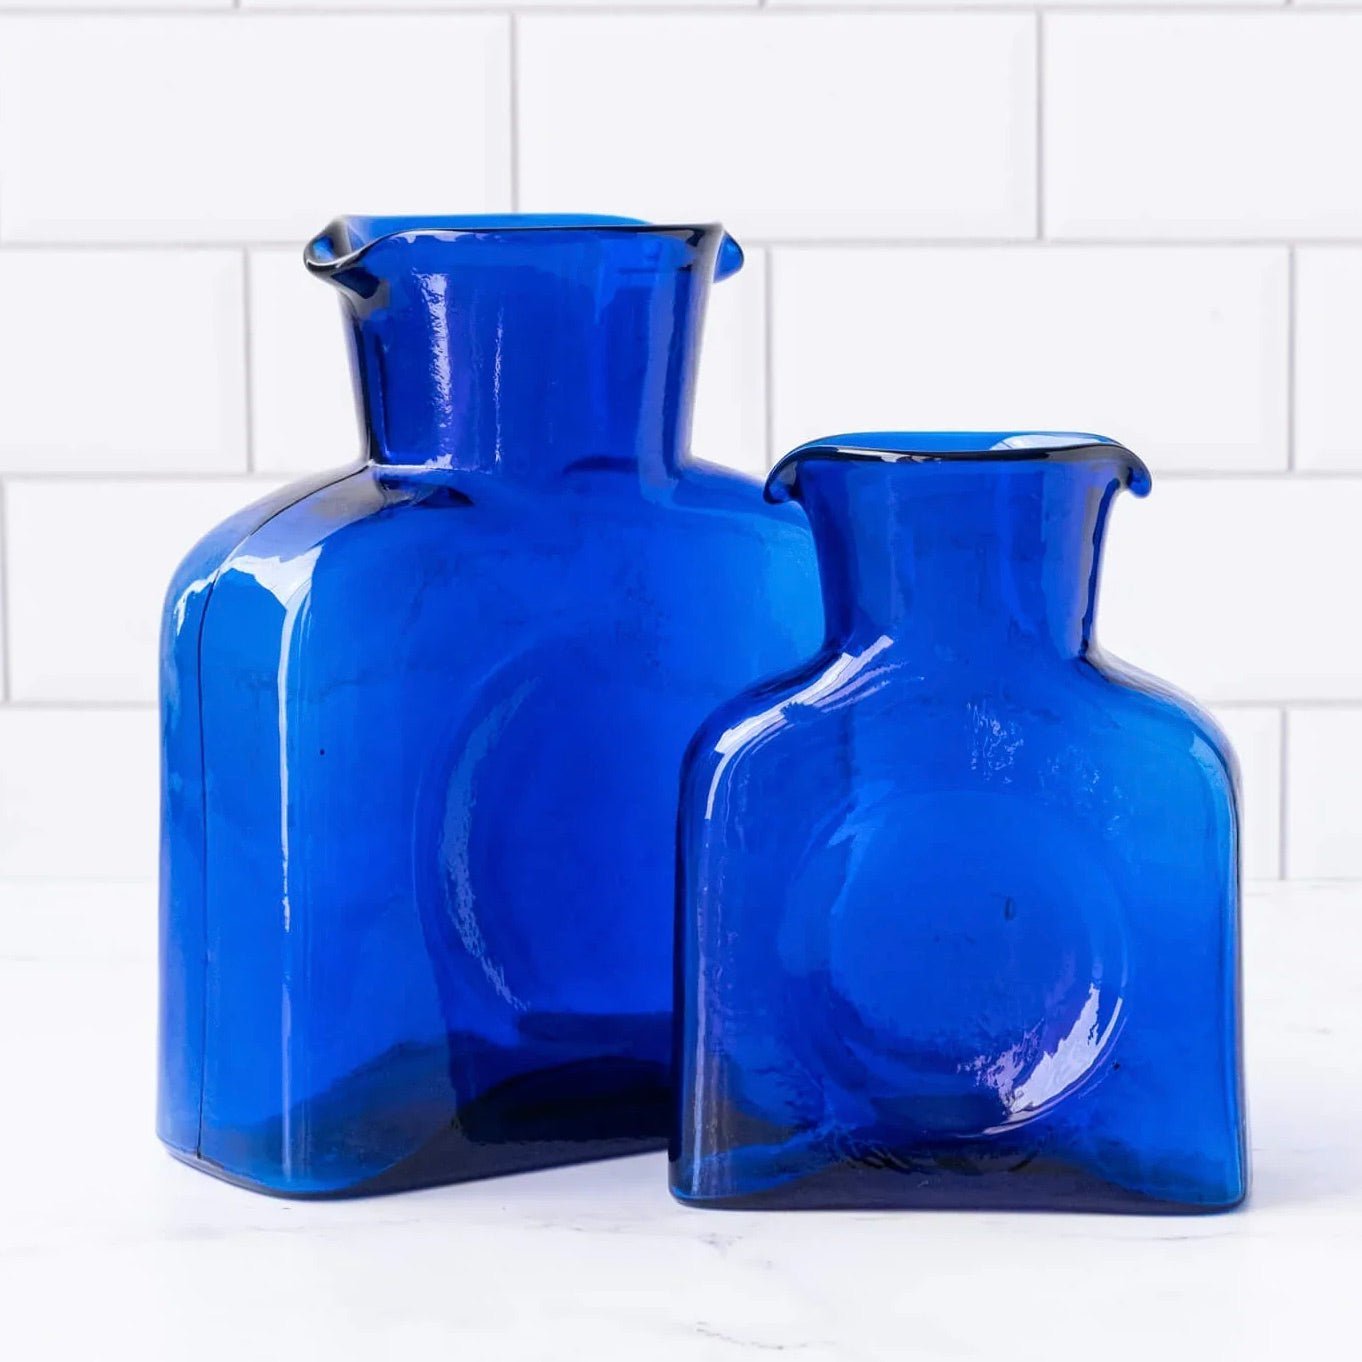 https://shops.mountvernon.org/cdn/shop/products/cobalt-blue-water-bottle-blenko-glass-mini-or-large-435223.jpg?v=1696614859